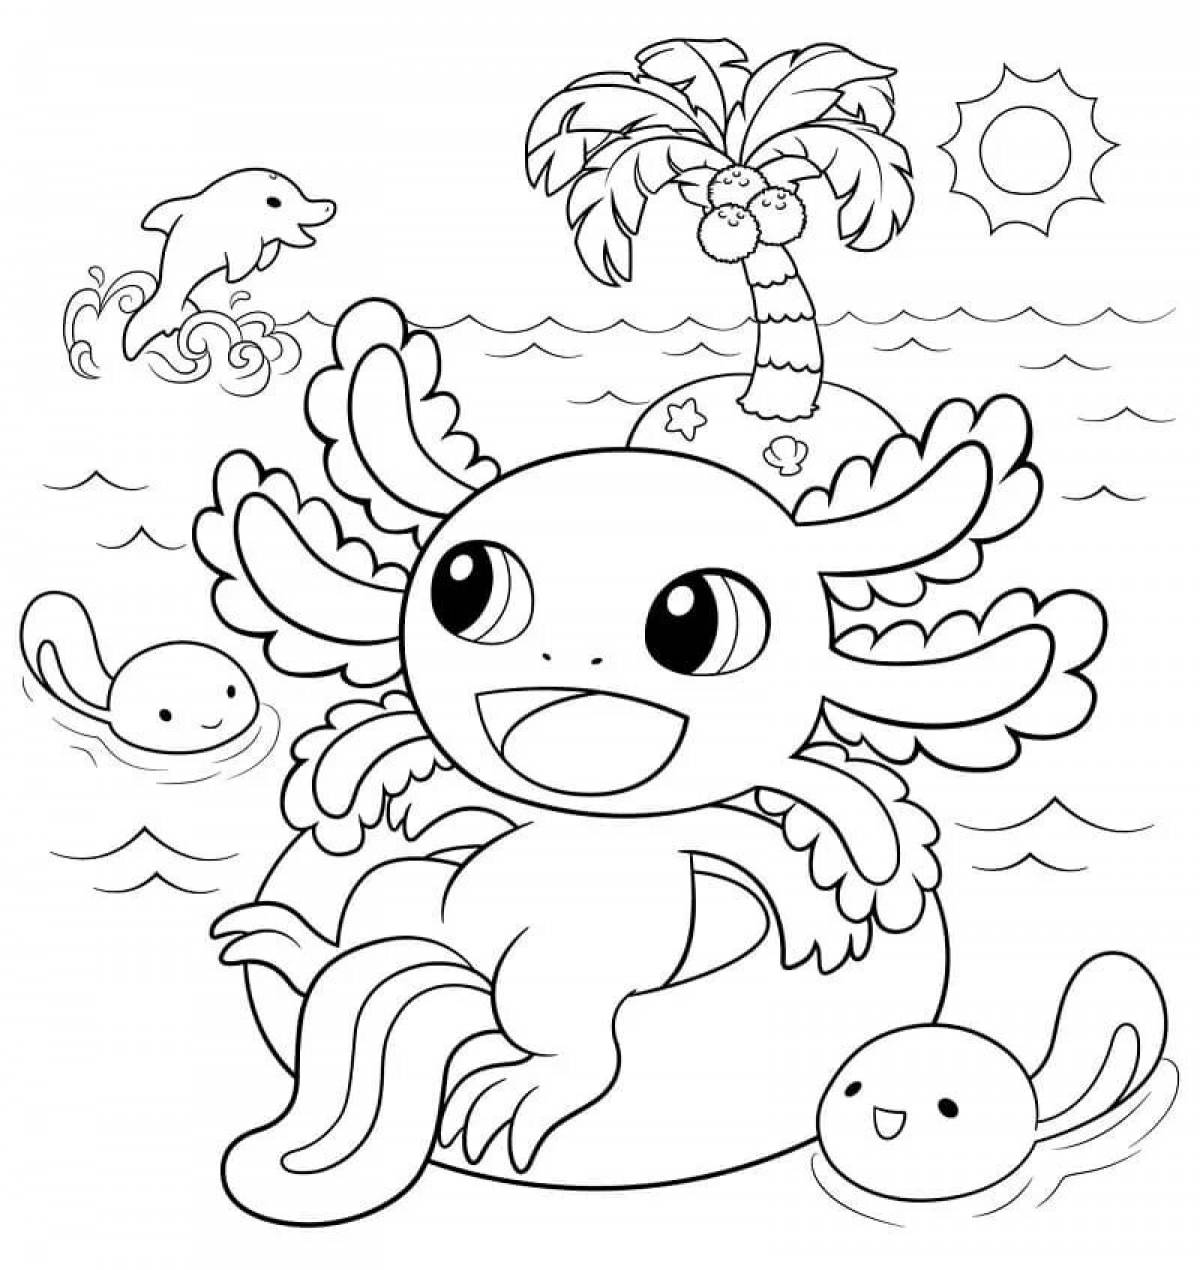 Glorious axolotl coloring book